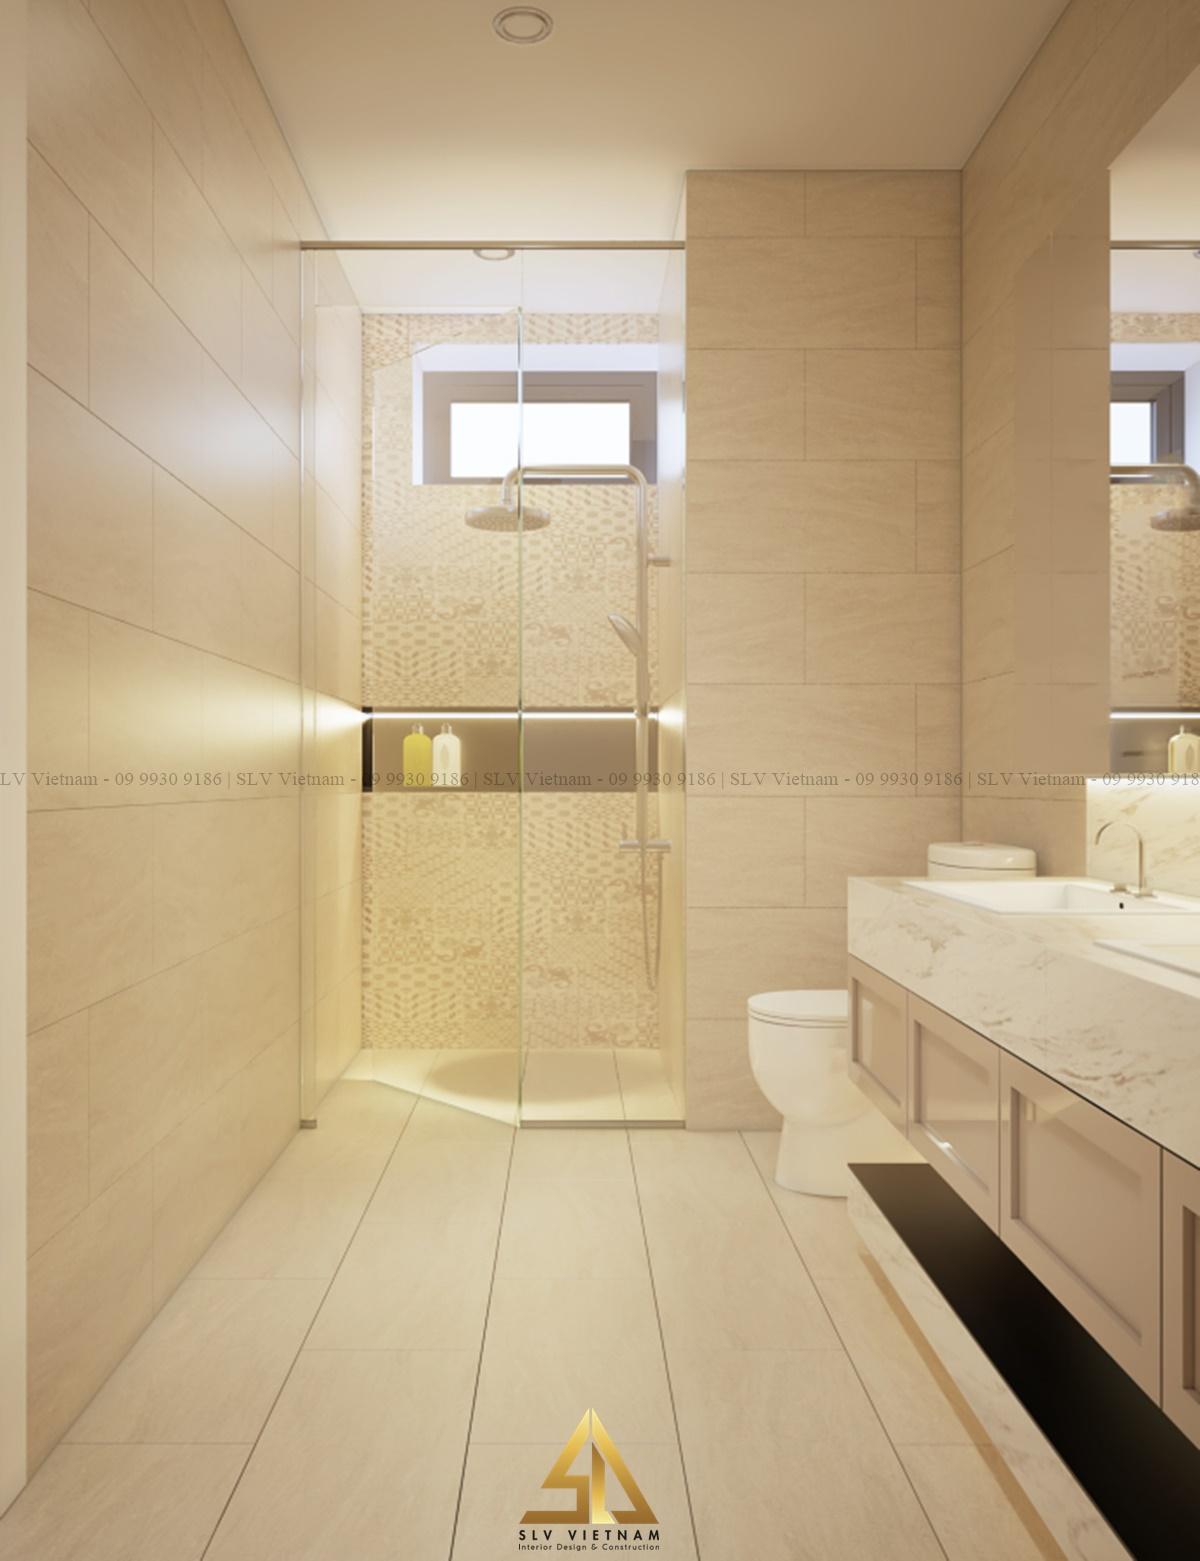 Phòng tắm tân cổ điển với các chi tiết trang trí đầy sáng tạo và ấn tượng (Dự án của SLV Vietnam)